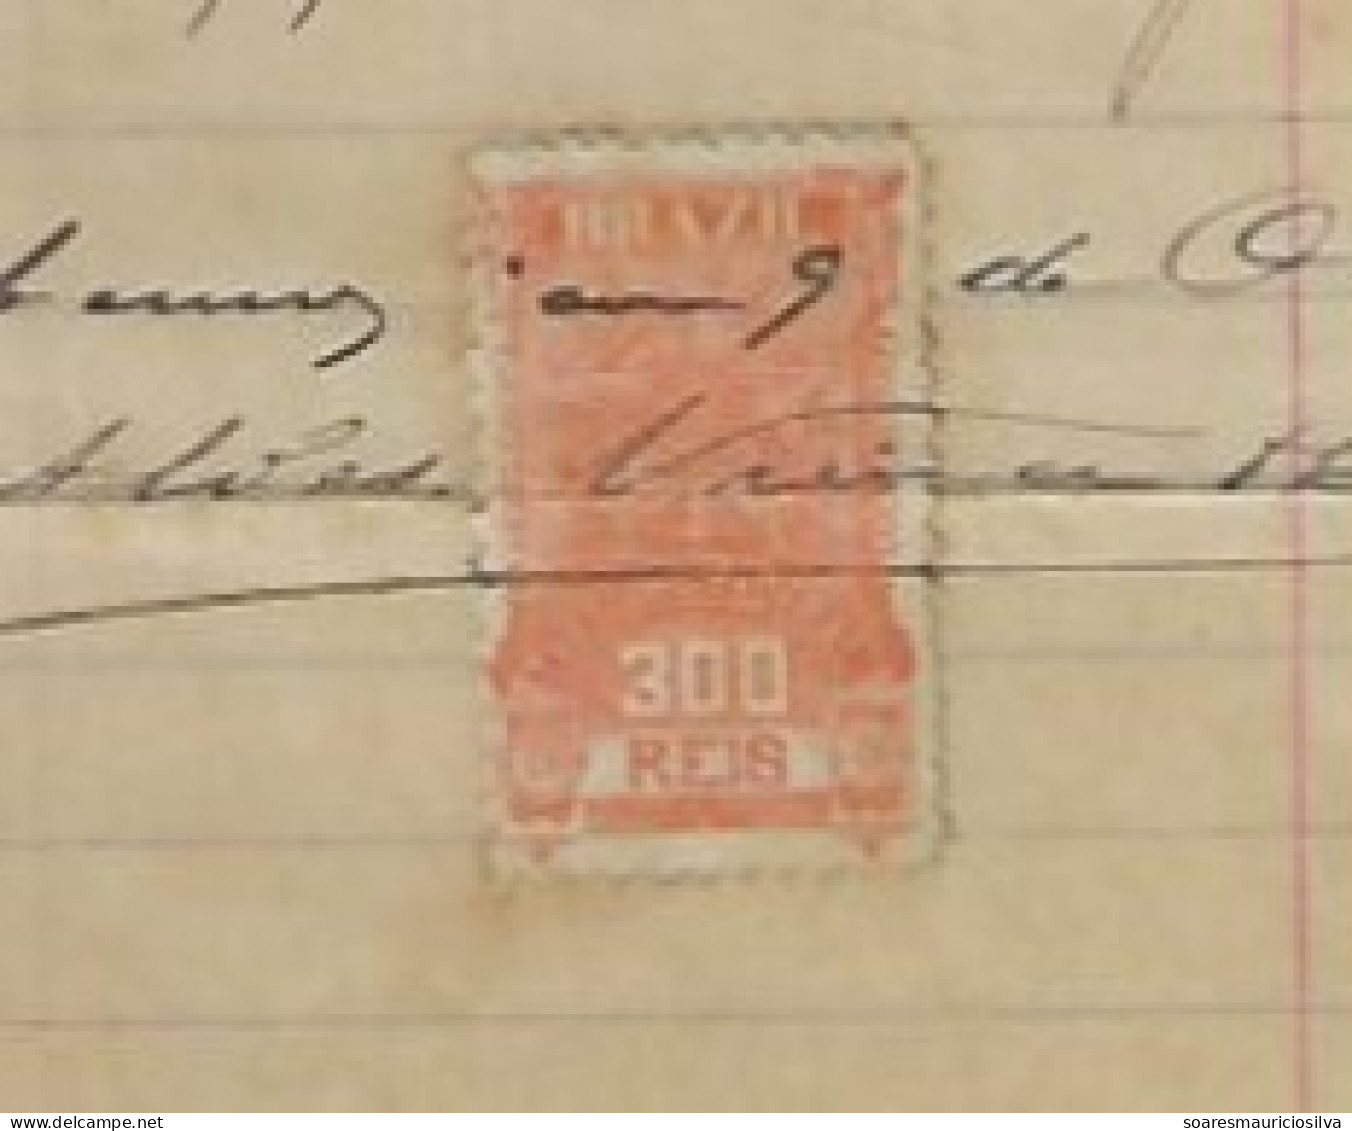 Brazil 1907 Invoice Bag Factory Guava Jam Warehouse Alves Vieira & Co Rio De Janeiro Pacific Watermark Tax Stamp 300 Rs - Briefe U. Dokumente